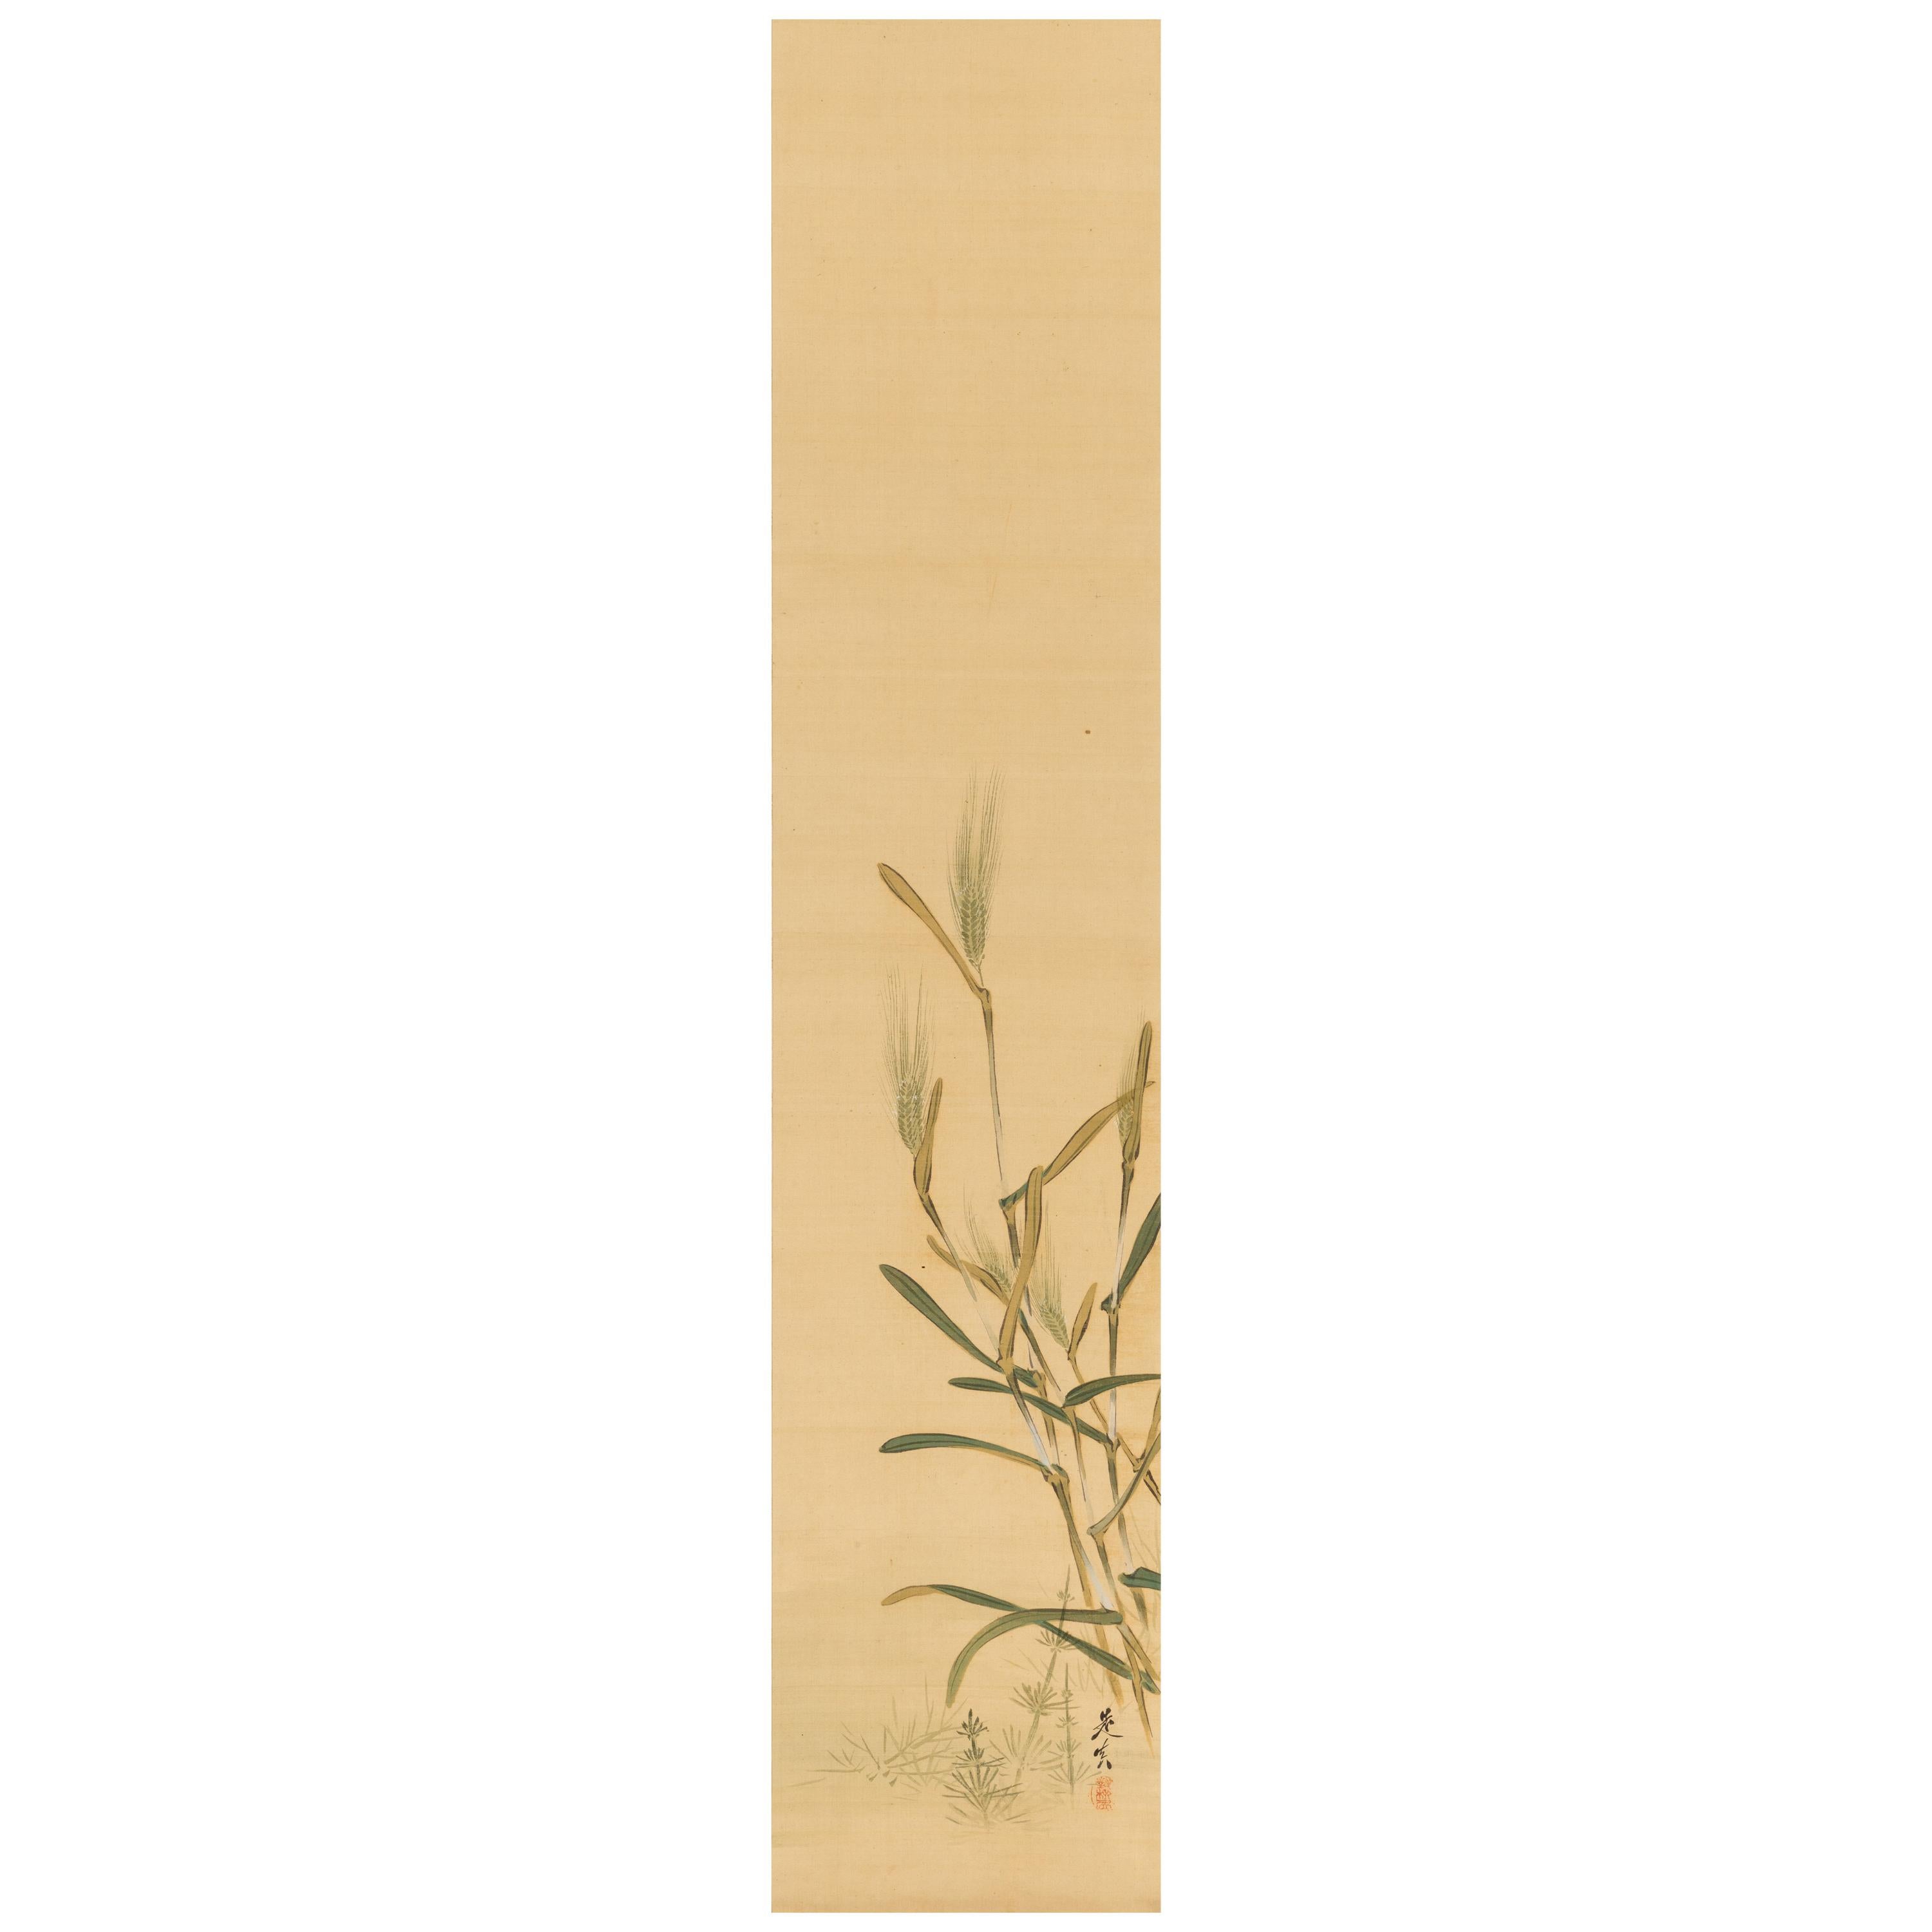 Shibata Zeshin ‘1807-1891’, Barley For Sale